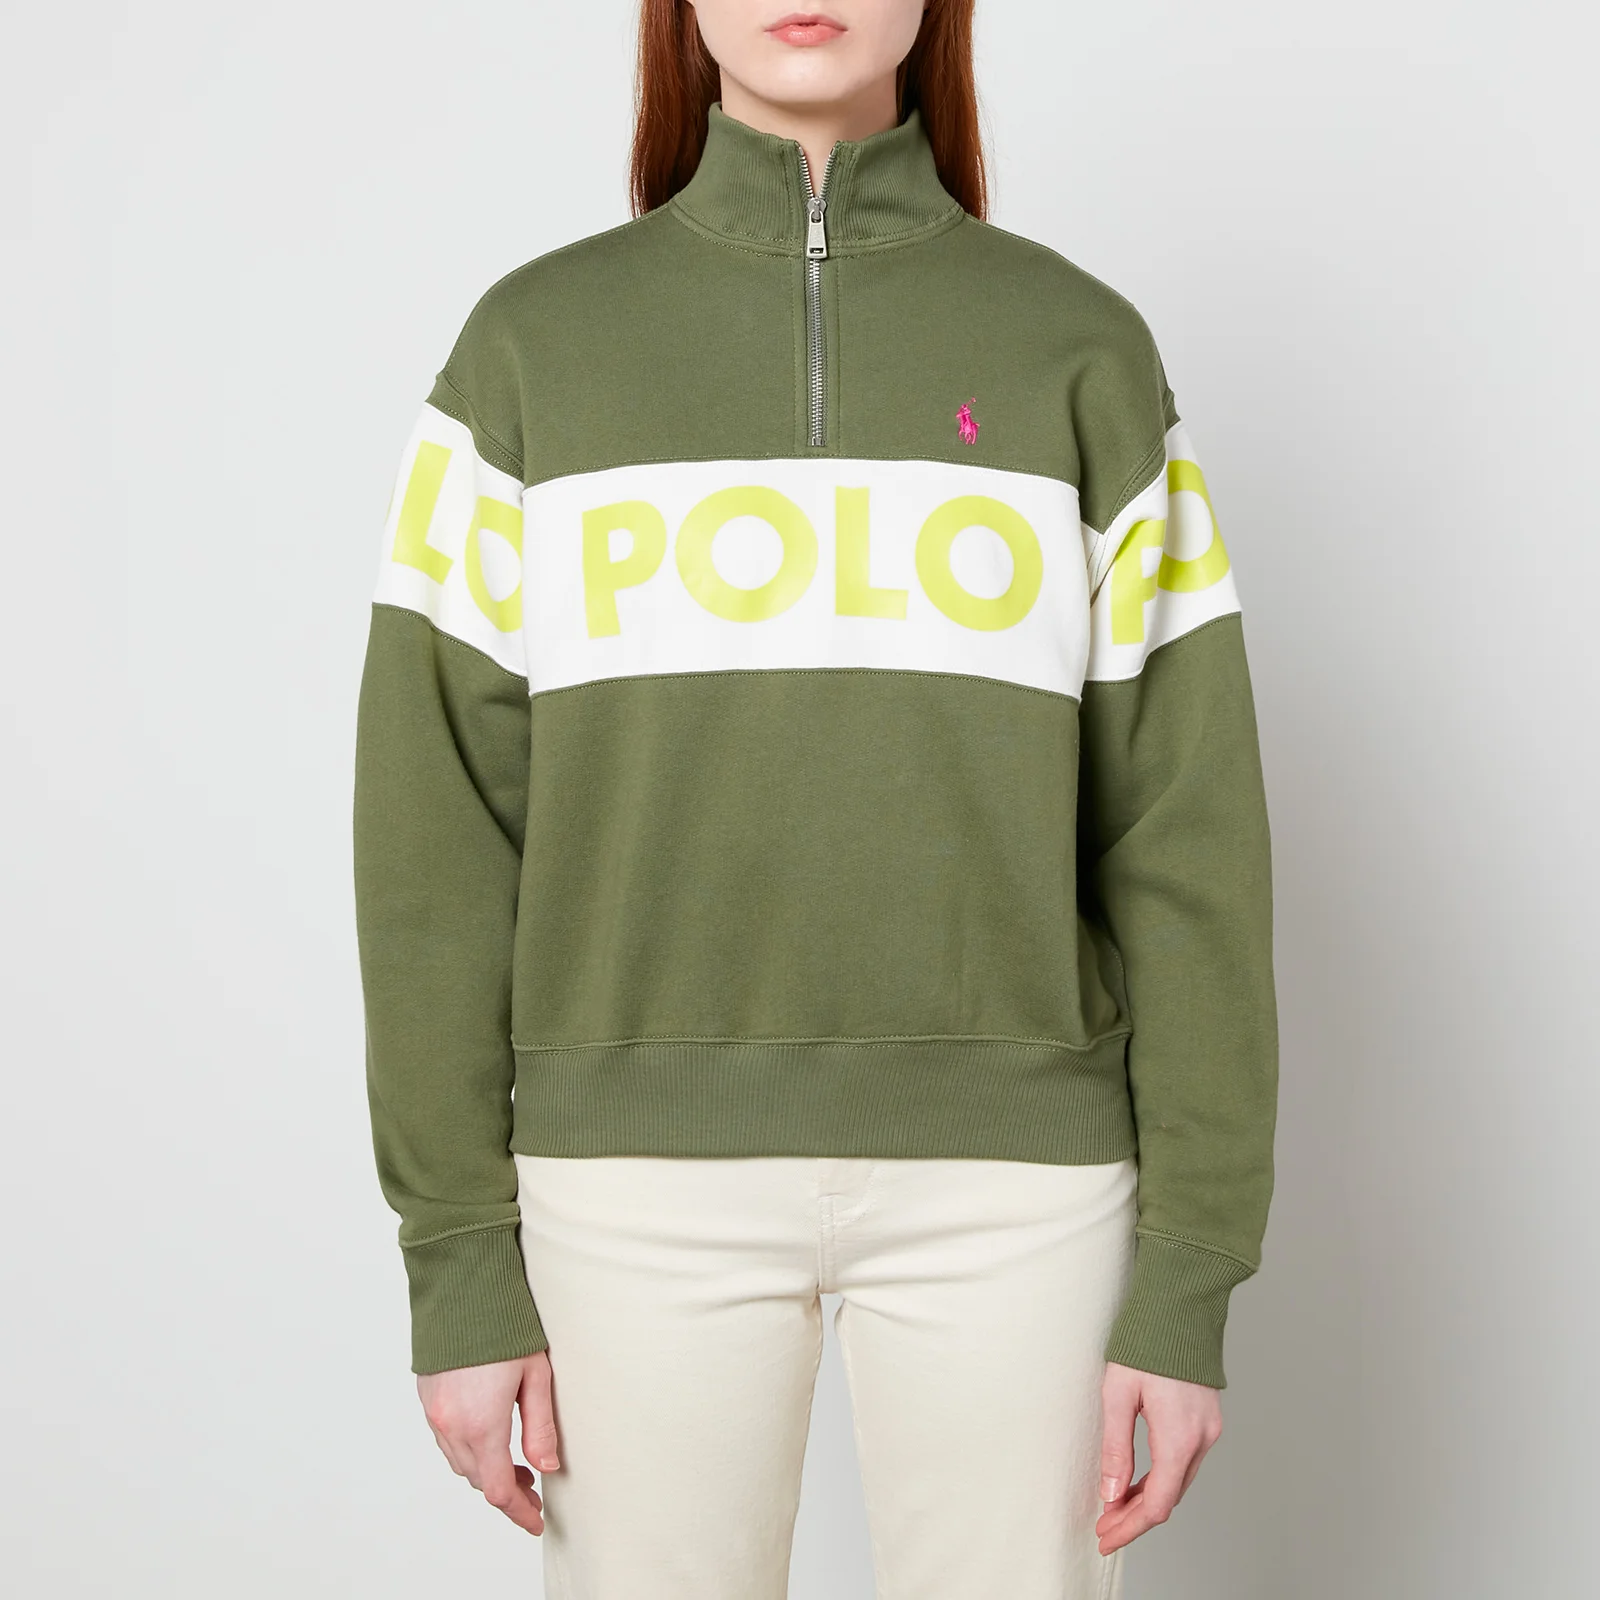 Polo Ralph Lauren Women's Half Zip Sweatshirt - Army Olive Image 1